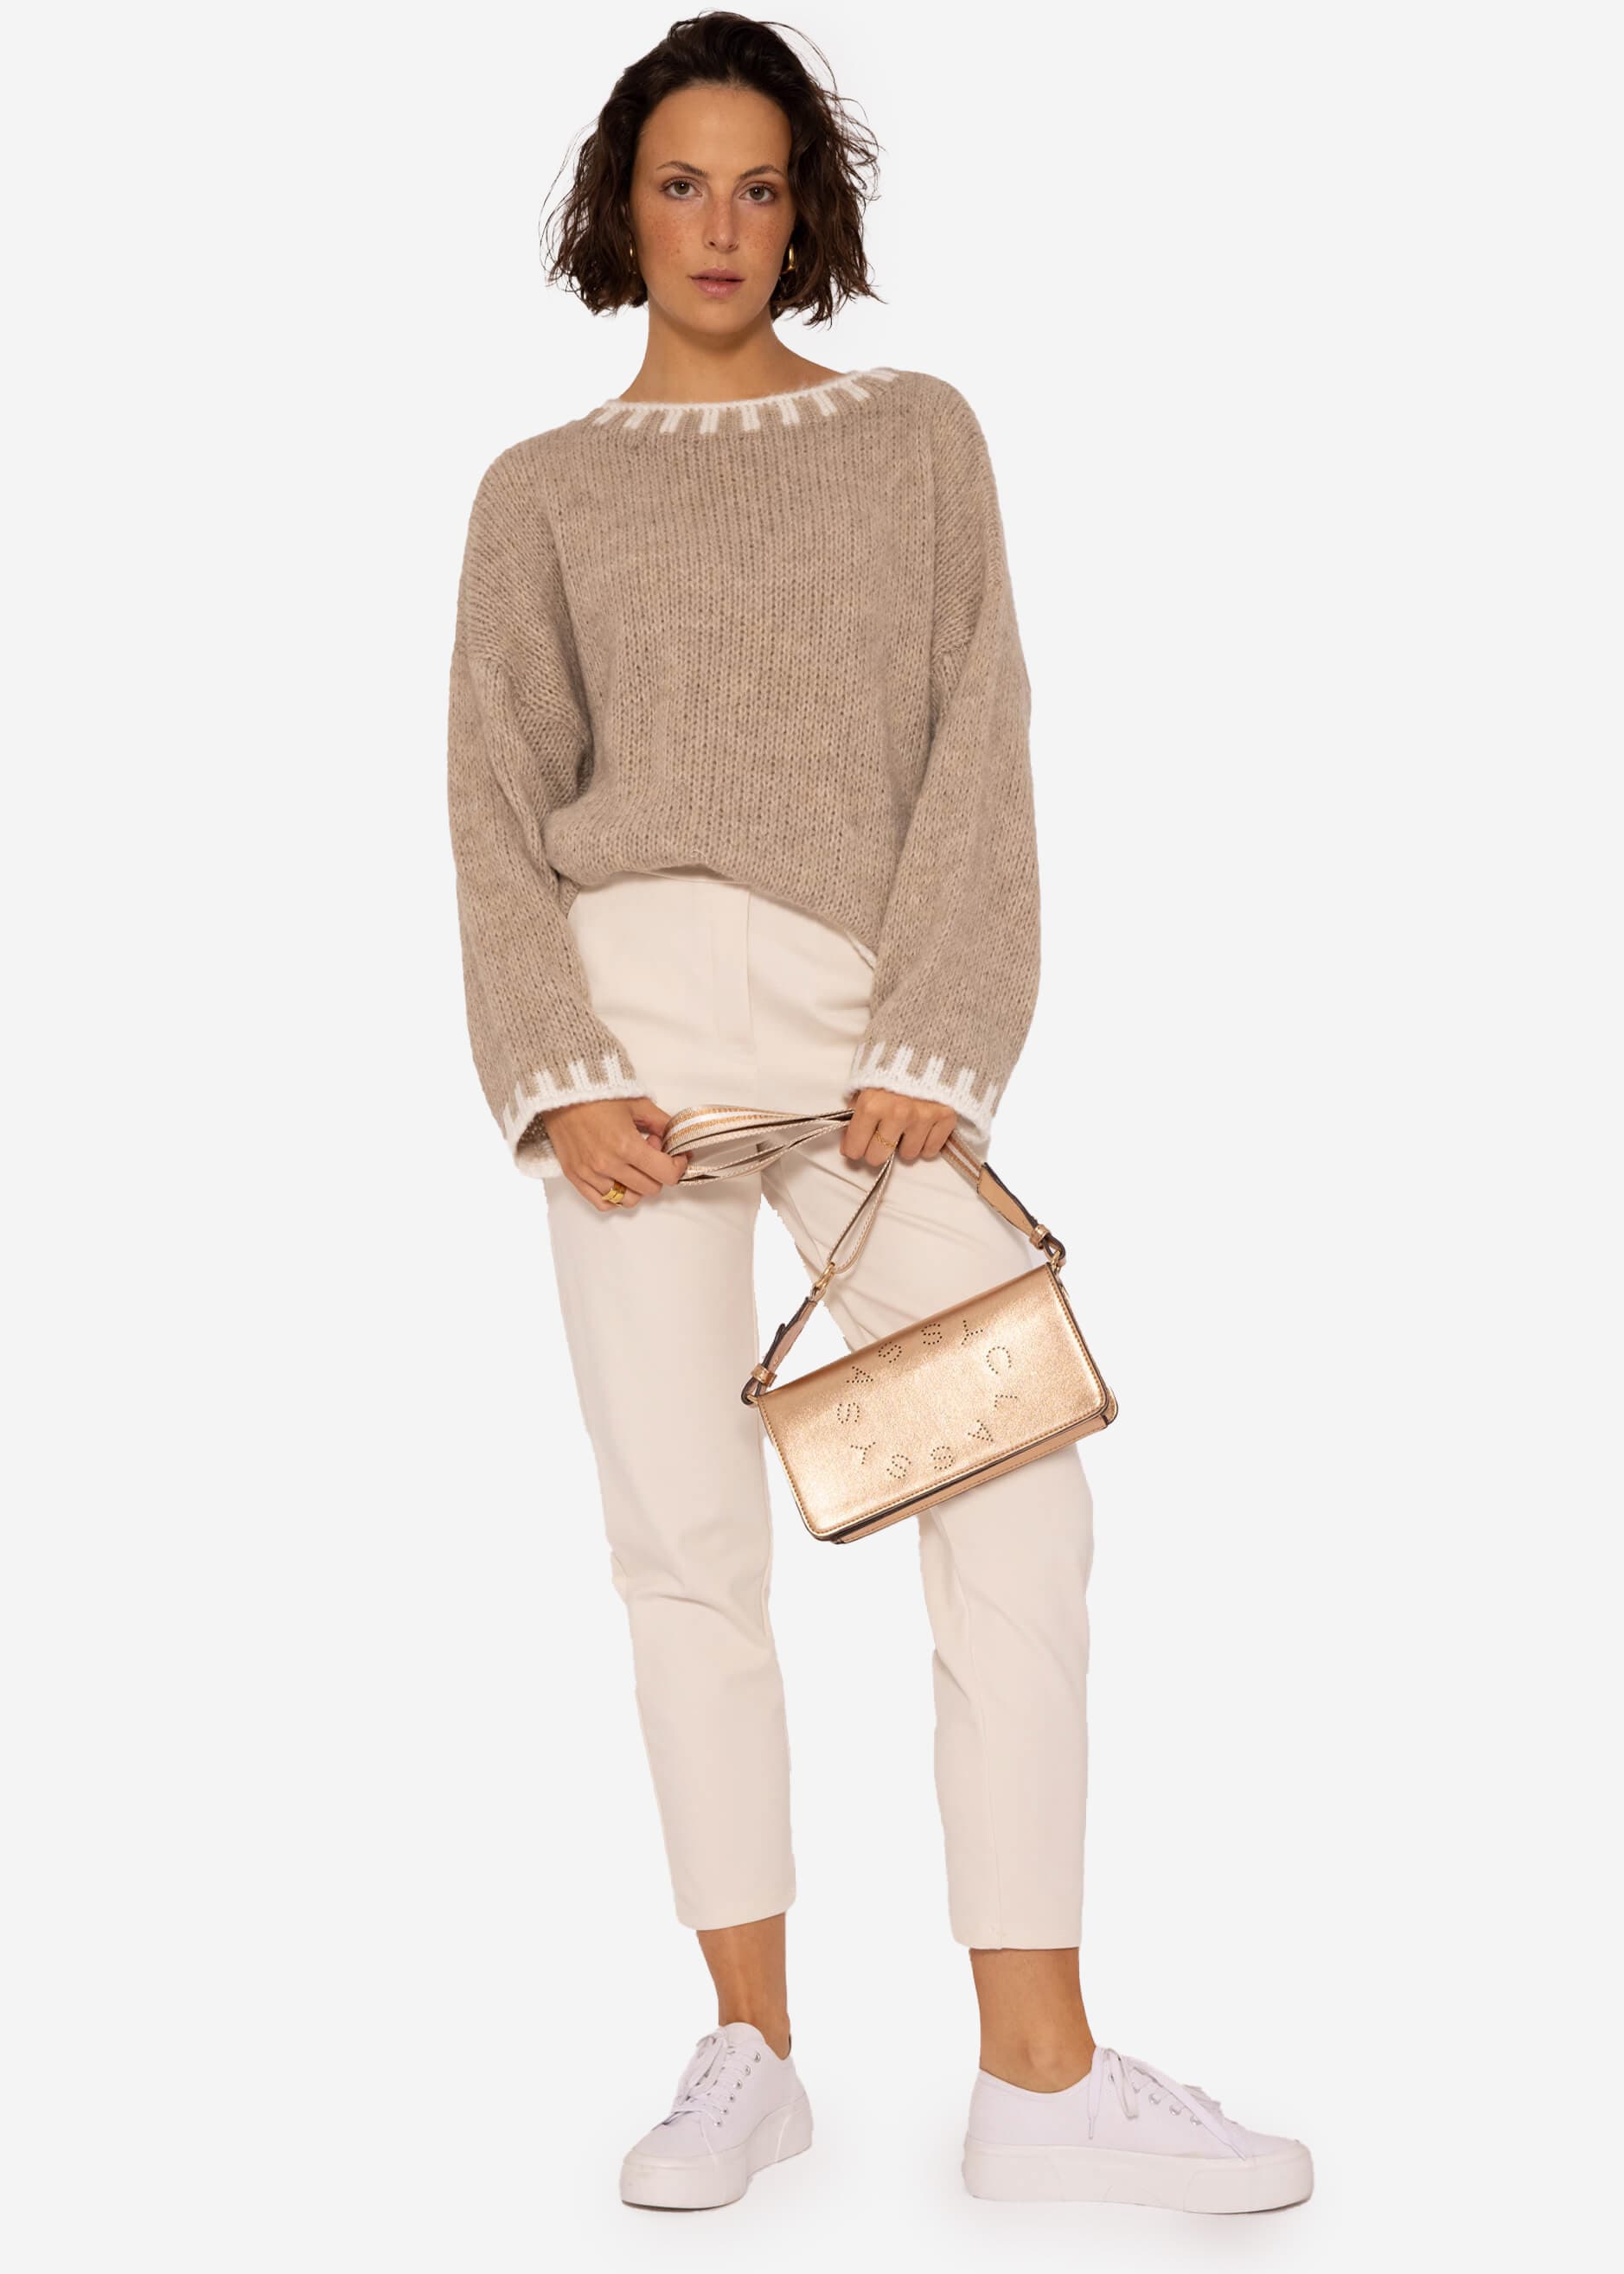 Pullover mit offwhite Details, beige Pullover | | SASSYCLASSY Bekleidung 